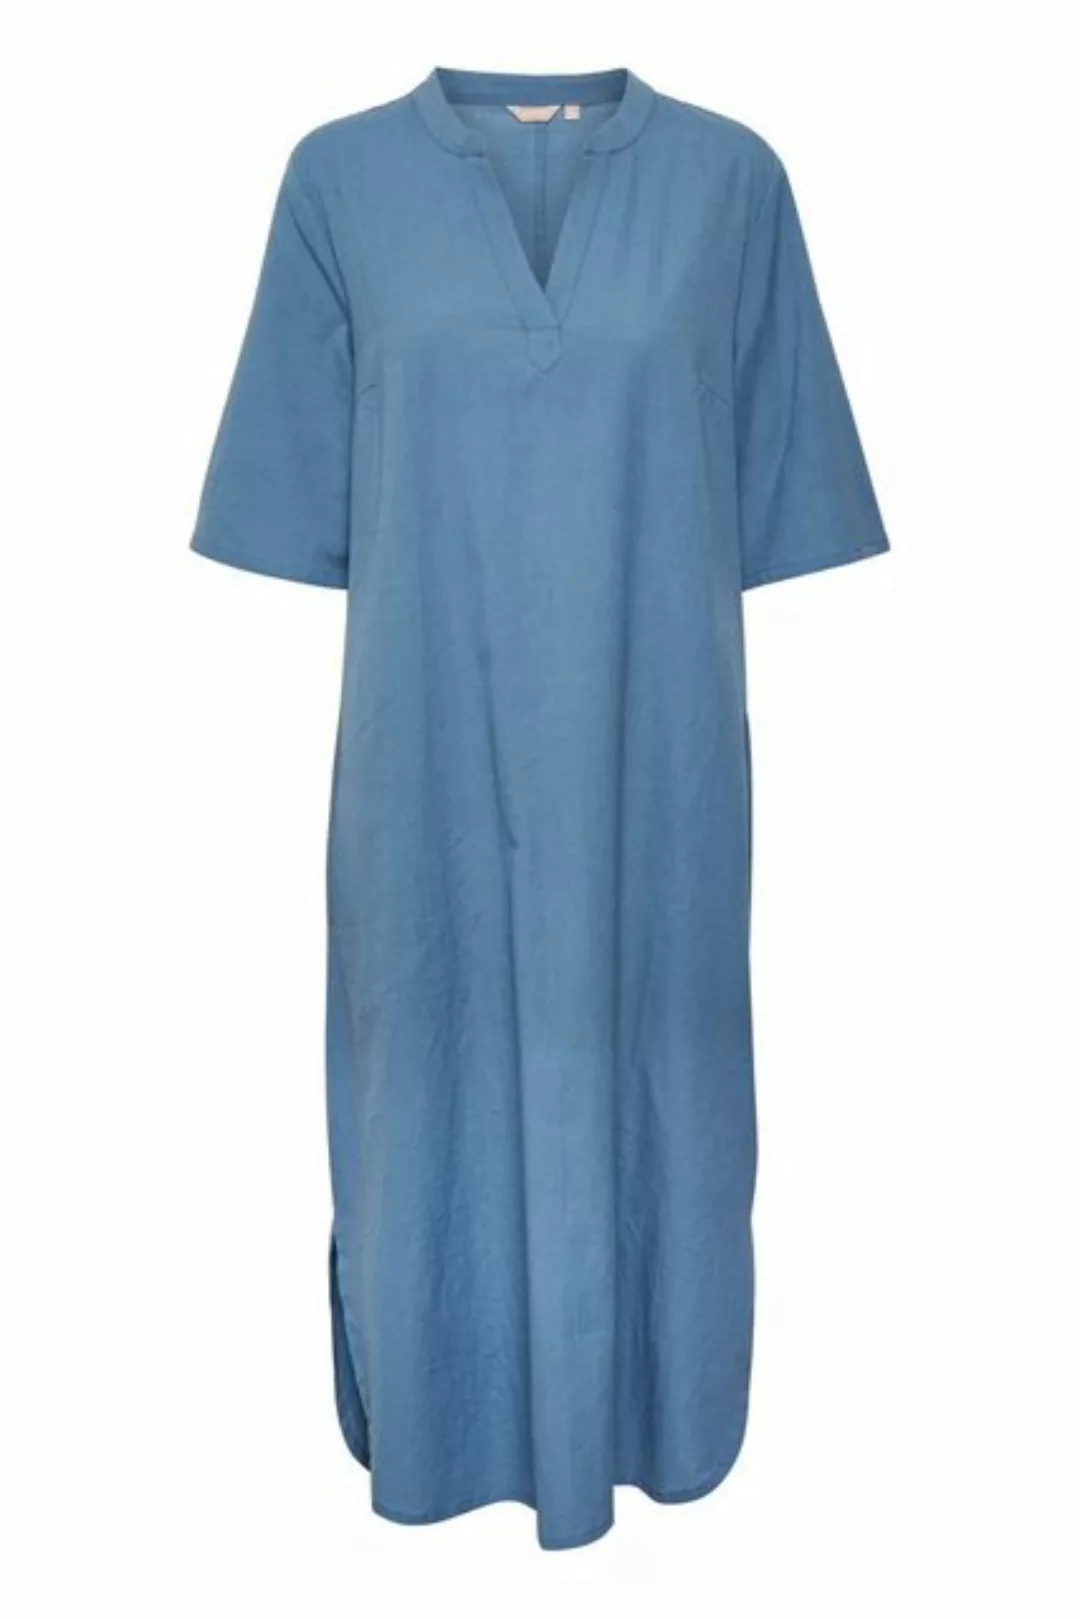 KAFFE Jerseykleid Kleid BPkaisey günstig online kaufen